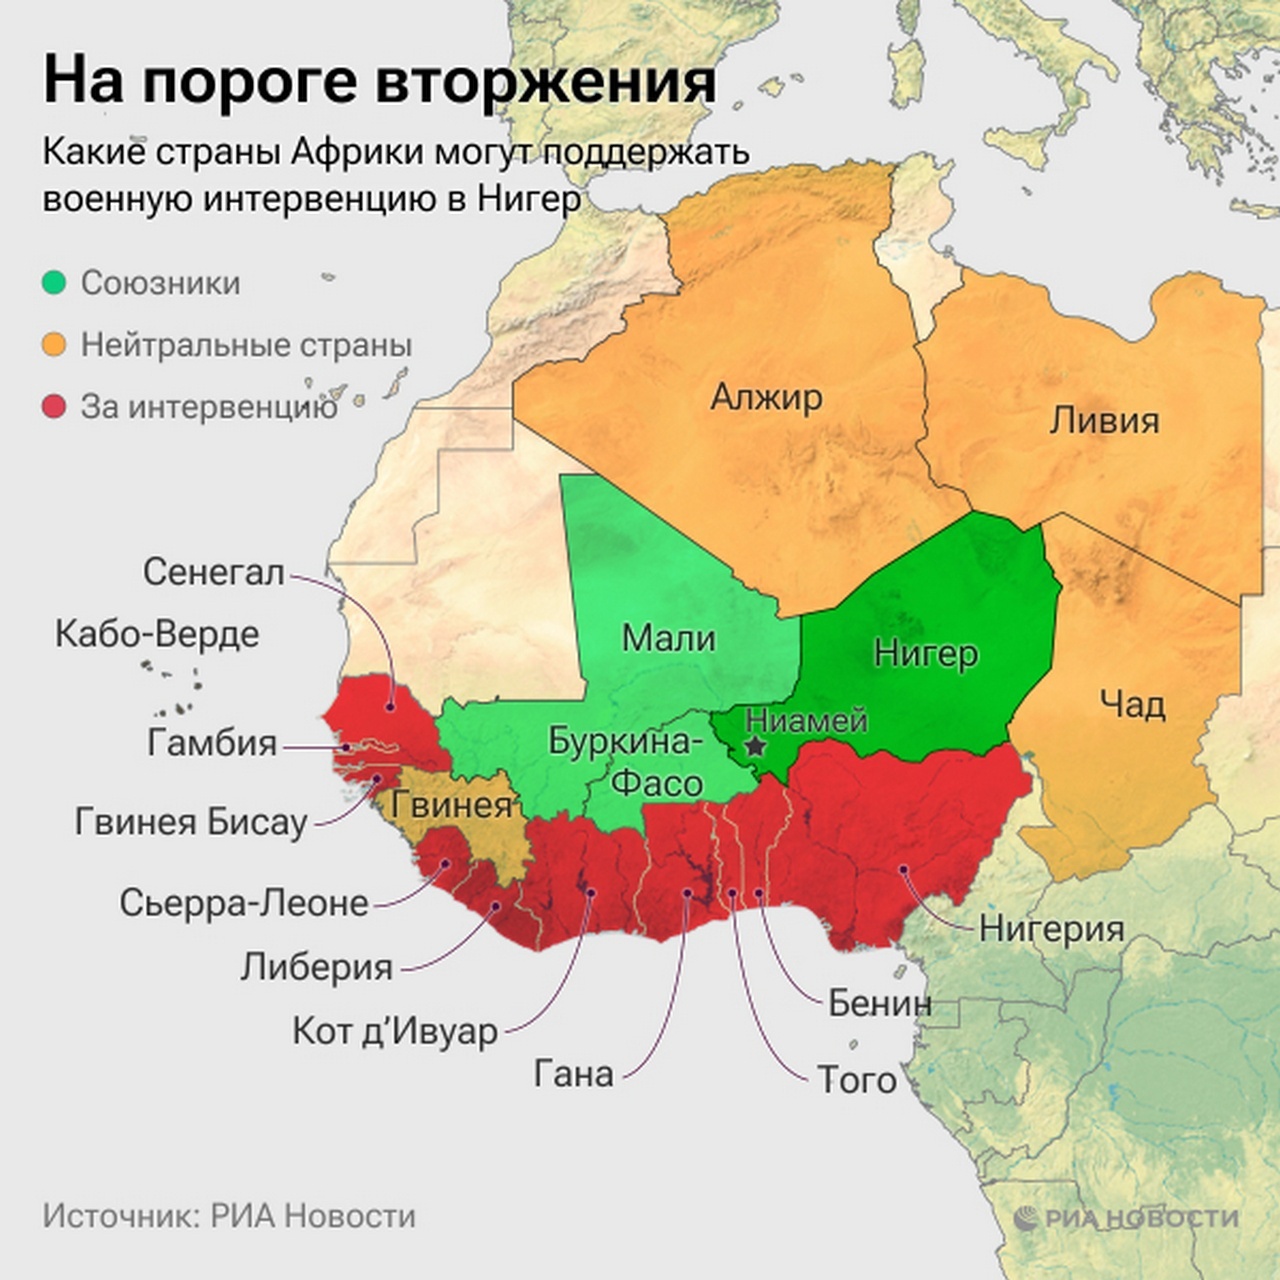 Страны Африки, которые могут поддержать военную интервенцию в Нигер.